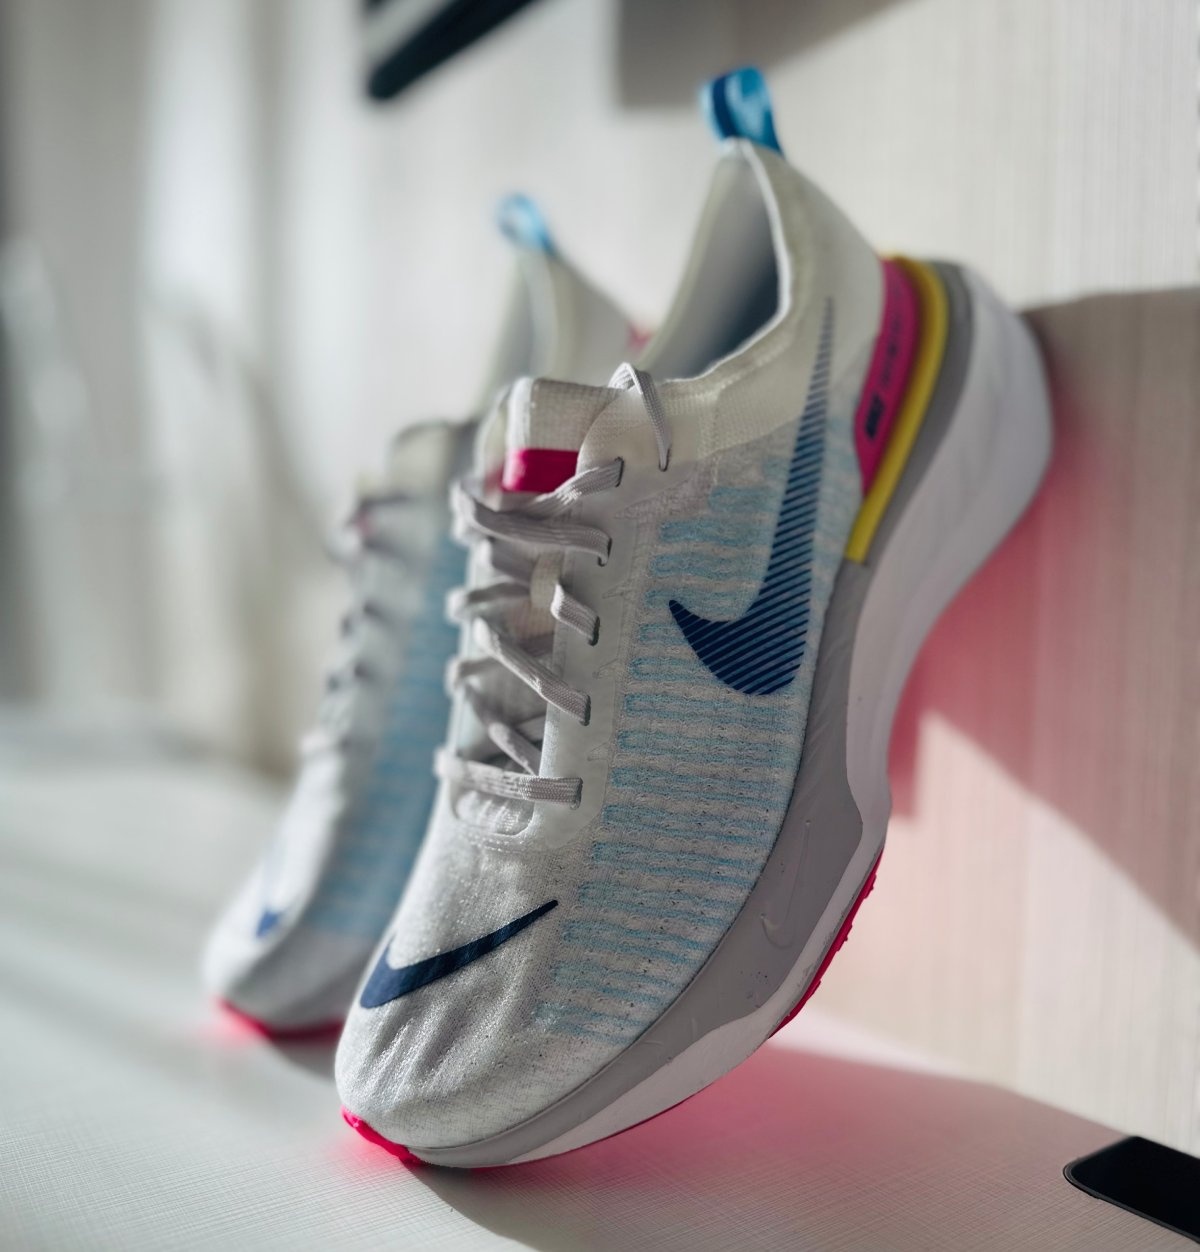 Nike está a subir a parada com os Invincible 3: novas cores para dominar o mercado do amortecimento